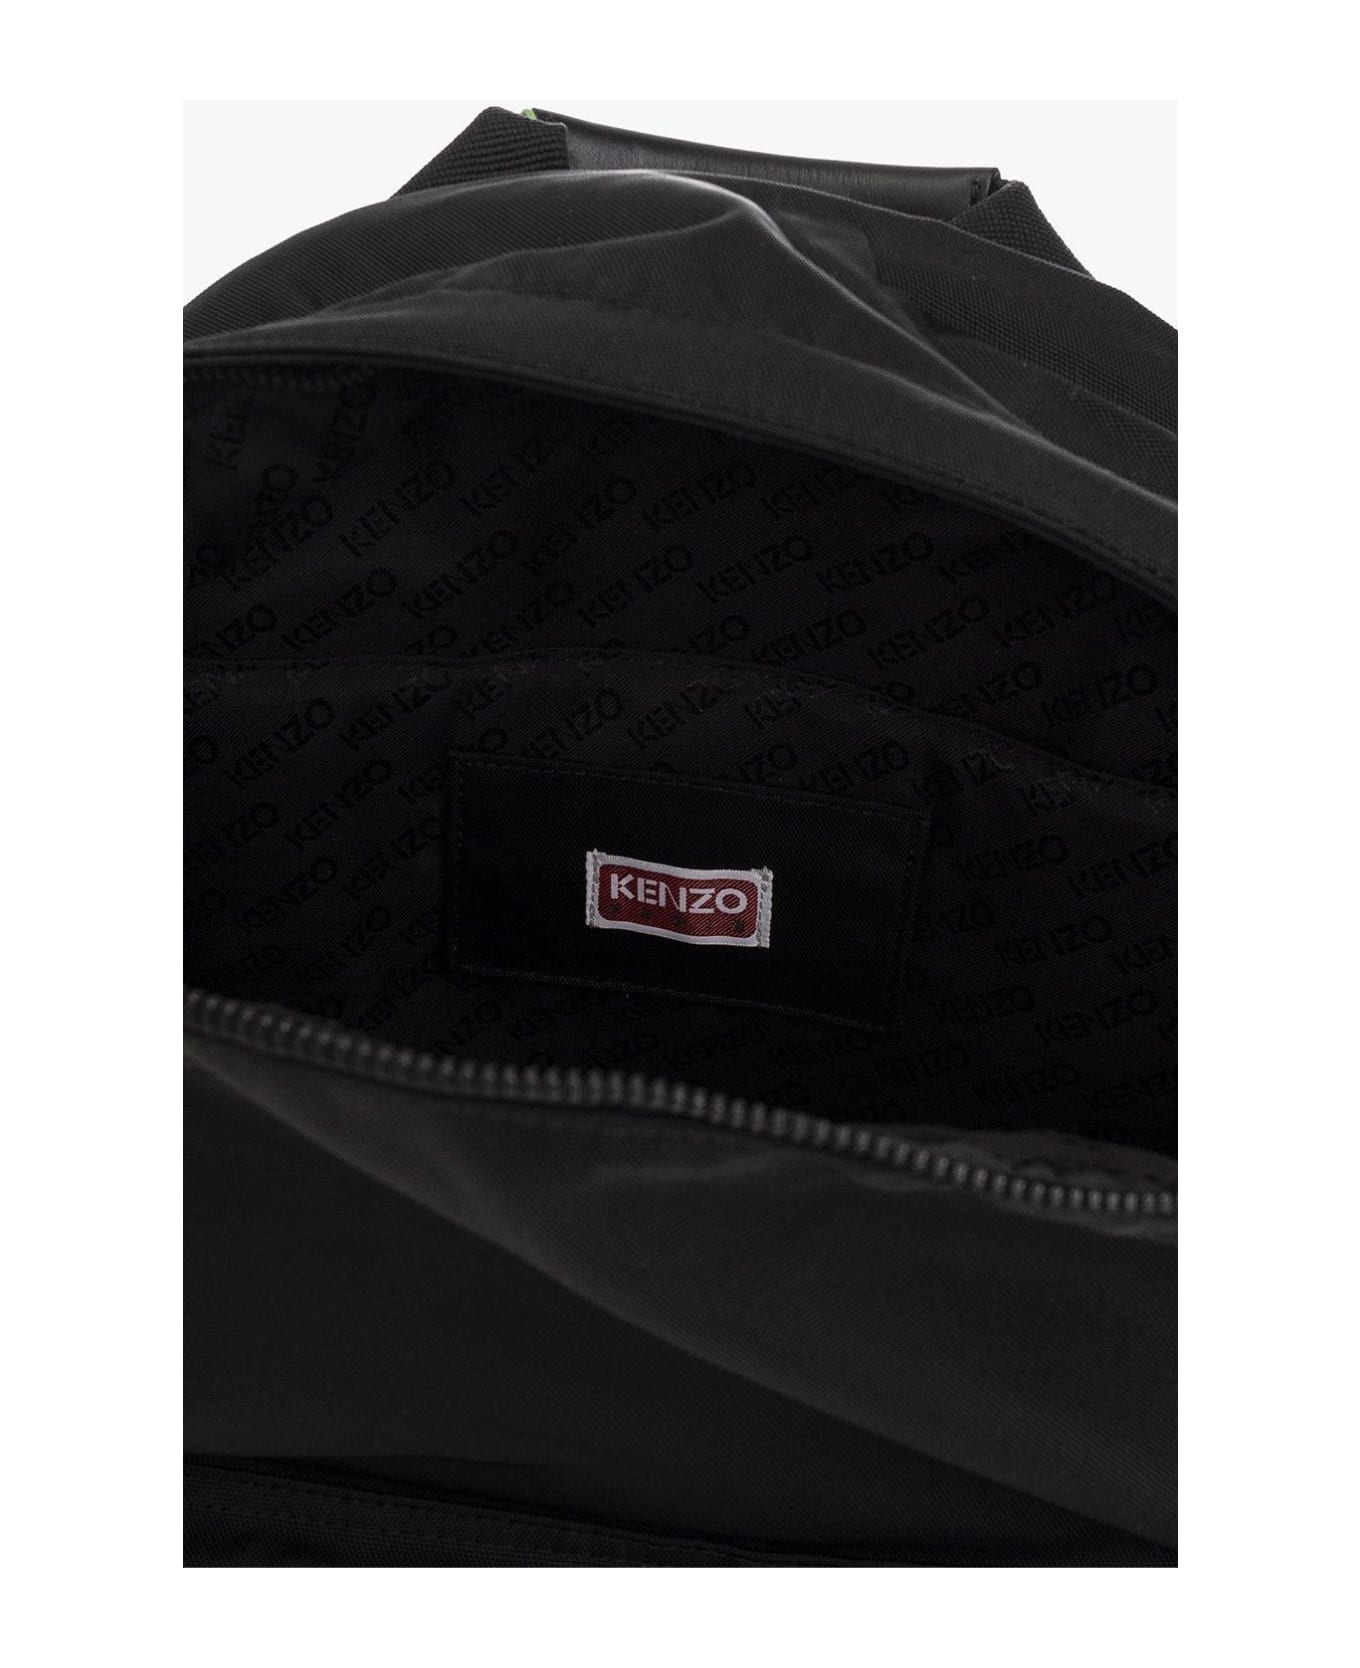 Kenzo Logo Printed Zipped Backpack - Nero